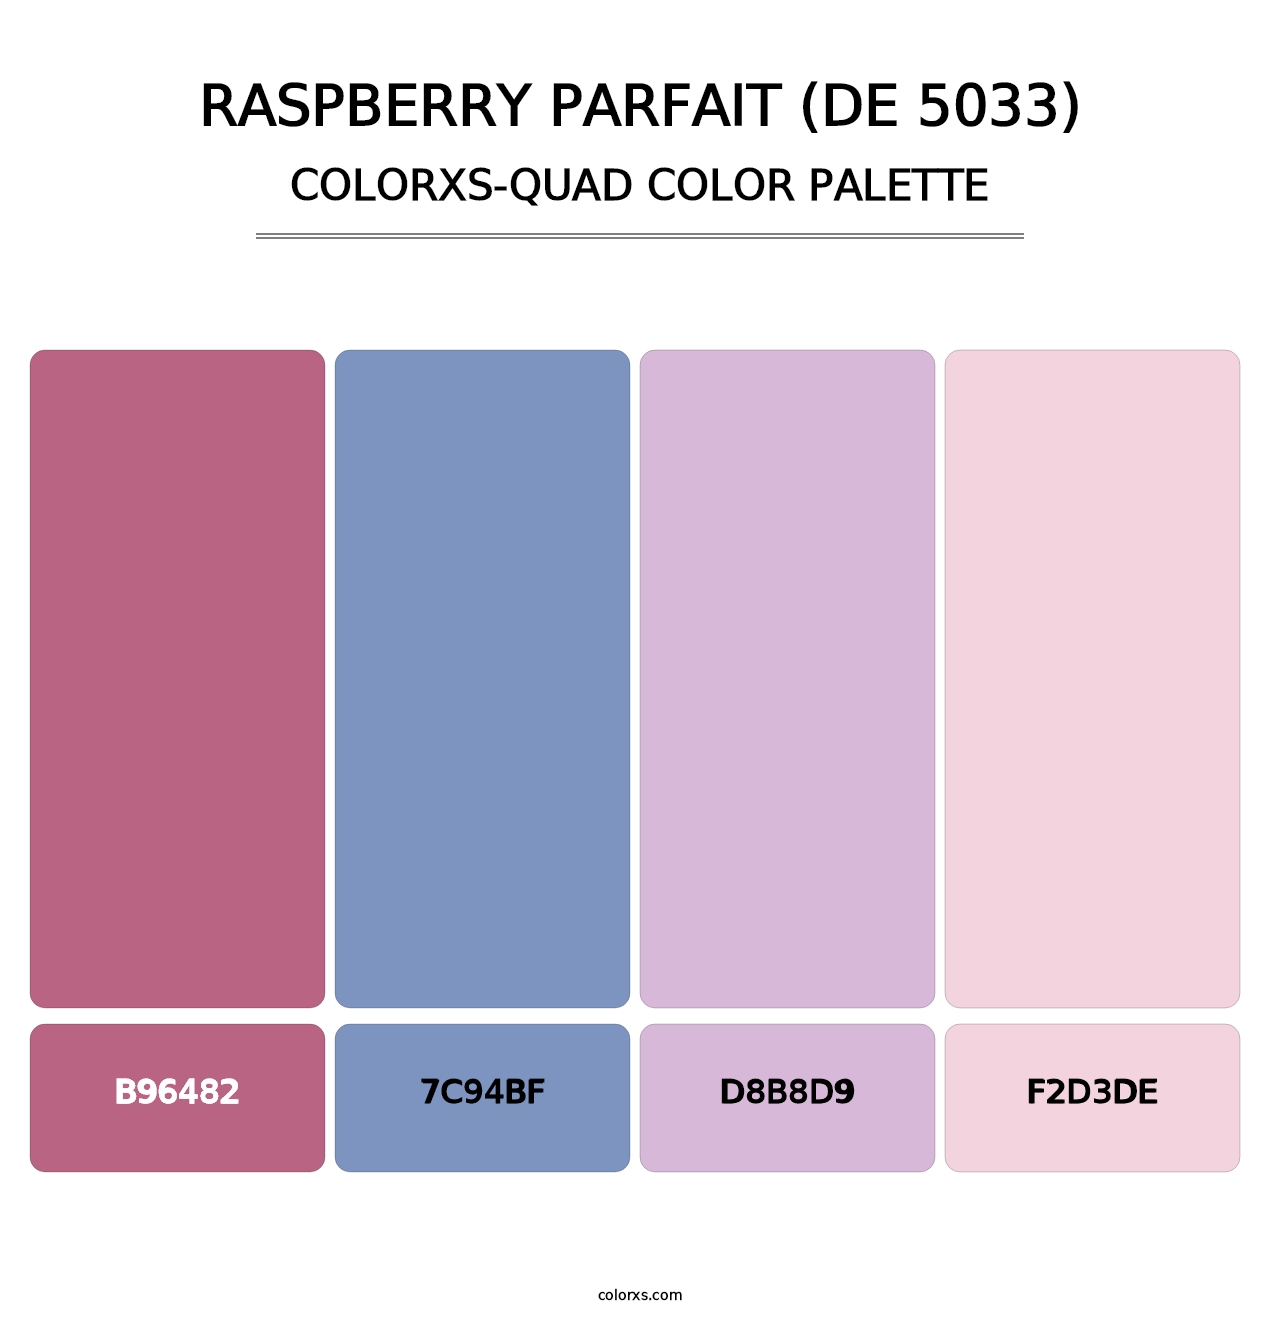 Raspberry Parfait (DE 5033) - Colorxs Quad Palette